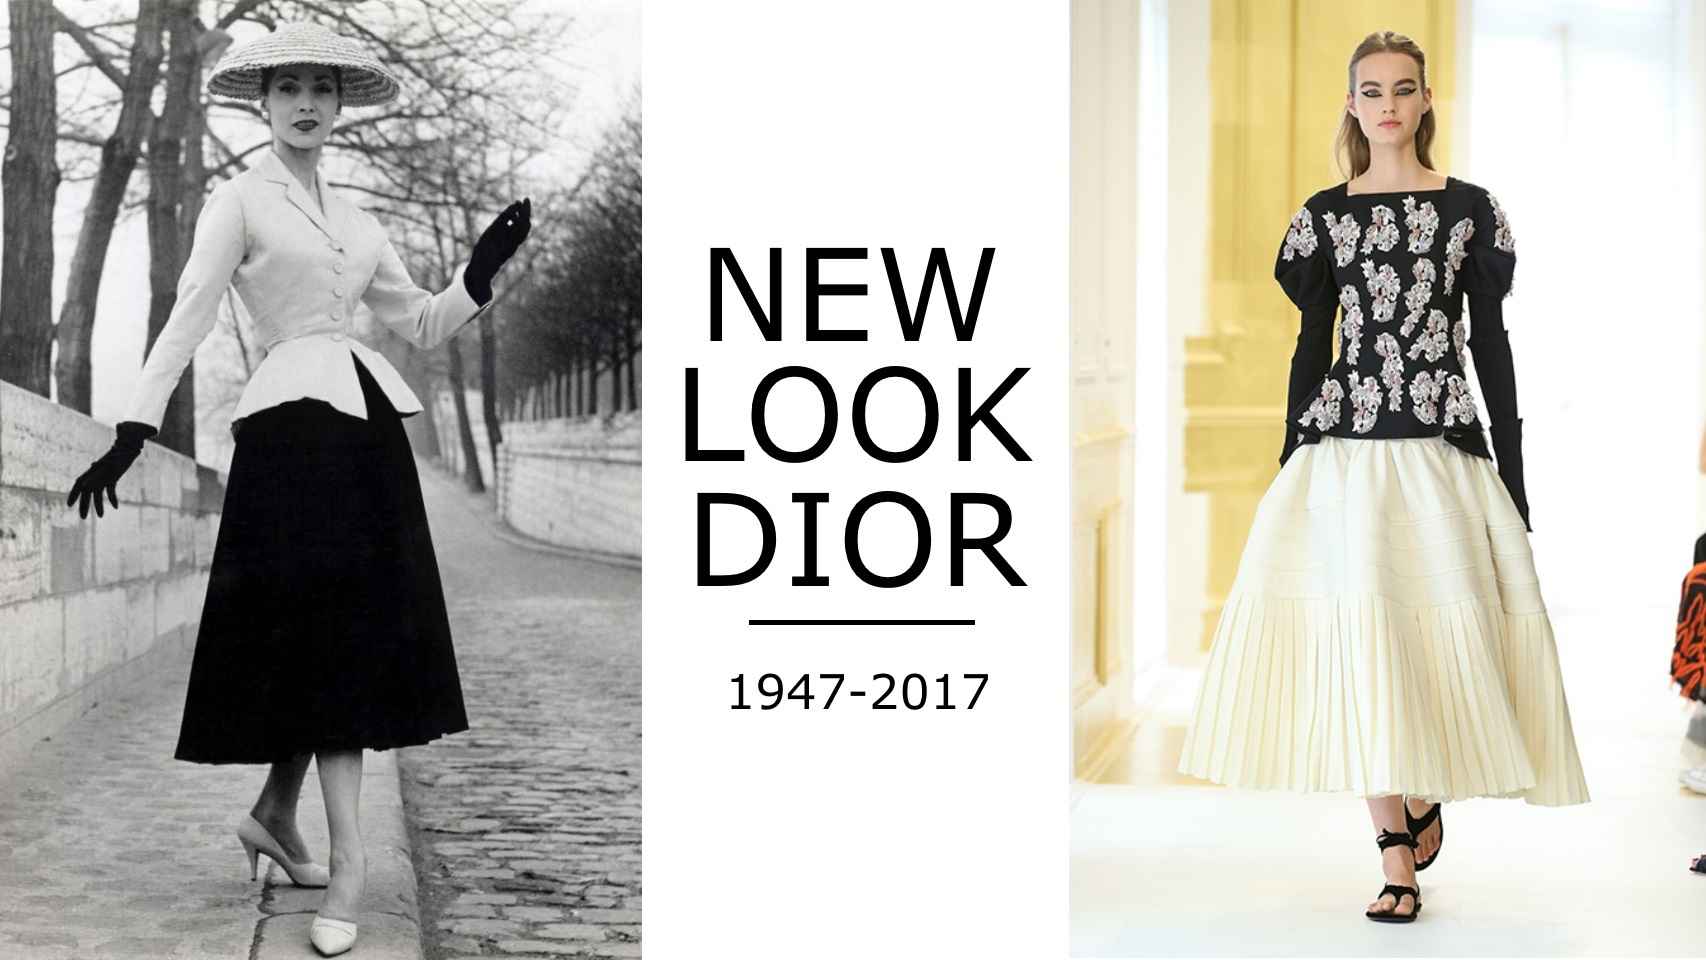 Christian Dior presentó su chaqueta Bar y su falda Corolle en 1947. Modelo de Alta Costura para el invierno 2016-2017.